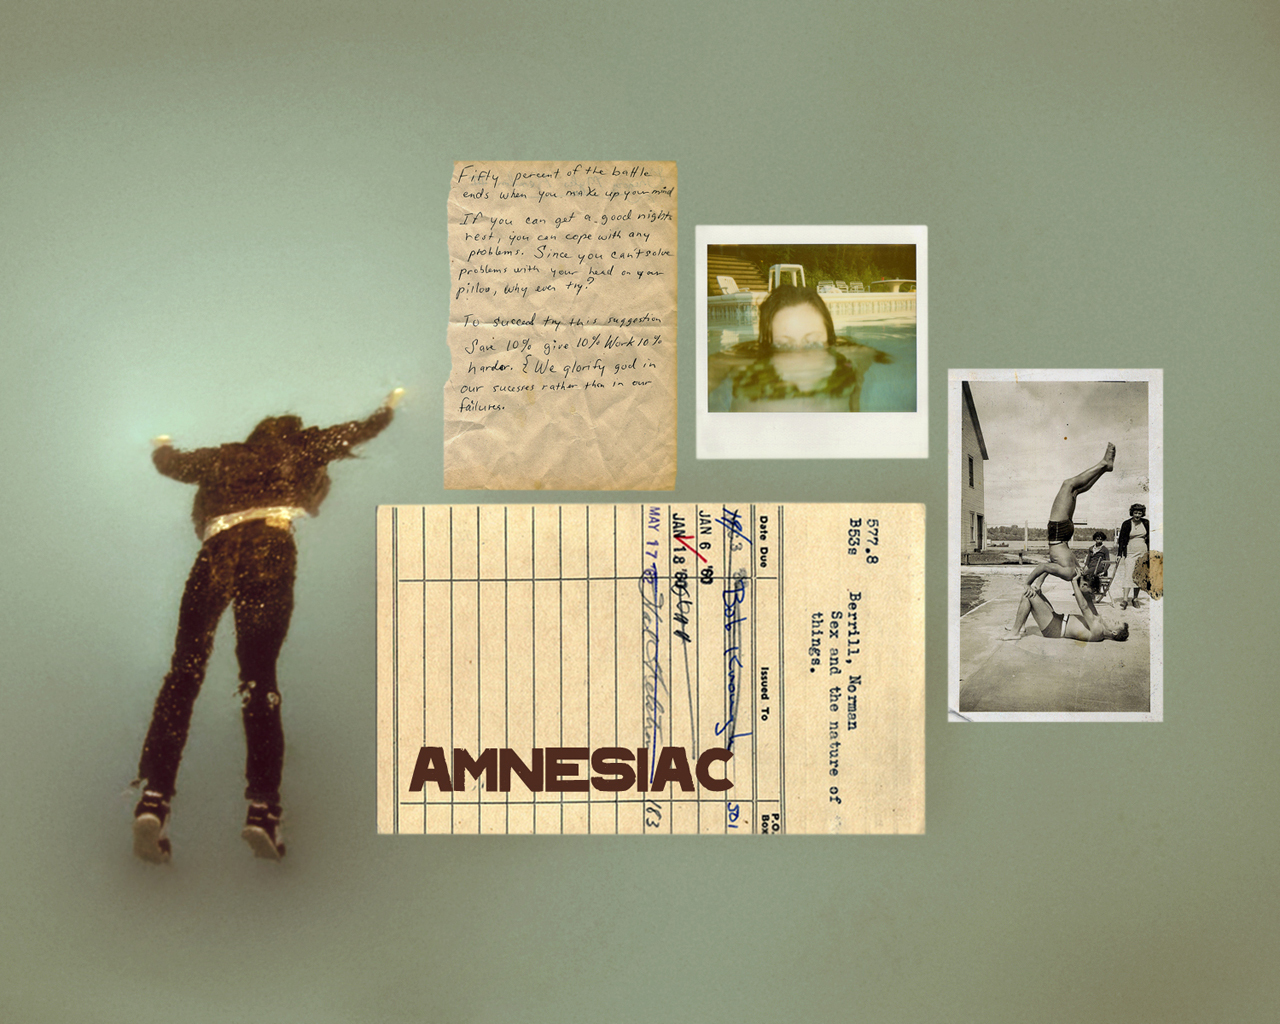 Radiohead+amnesiac